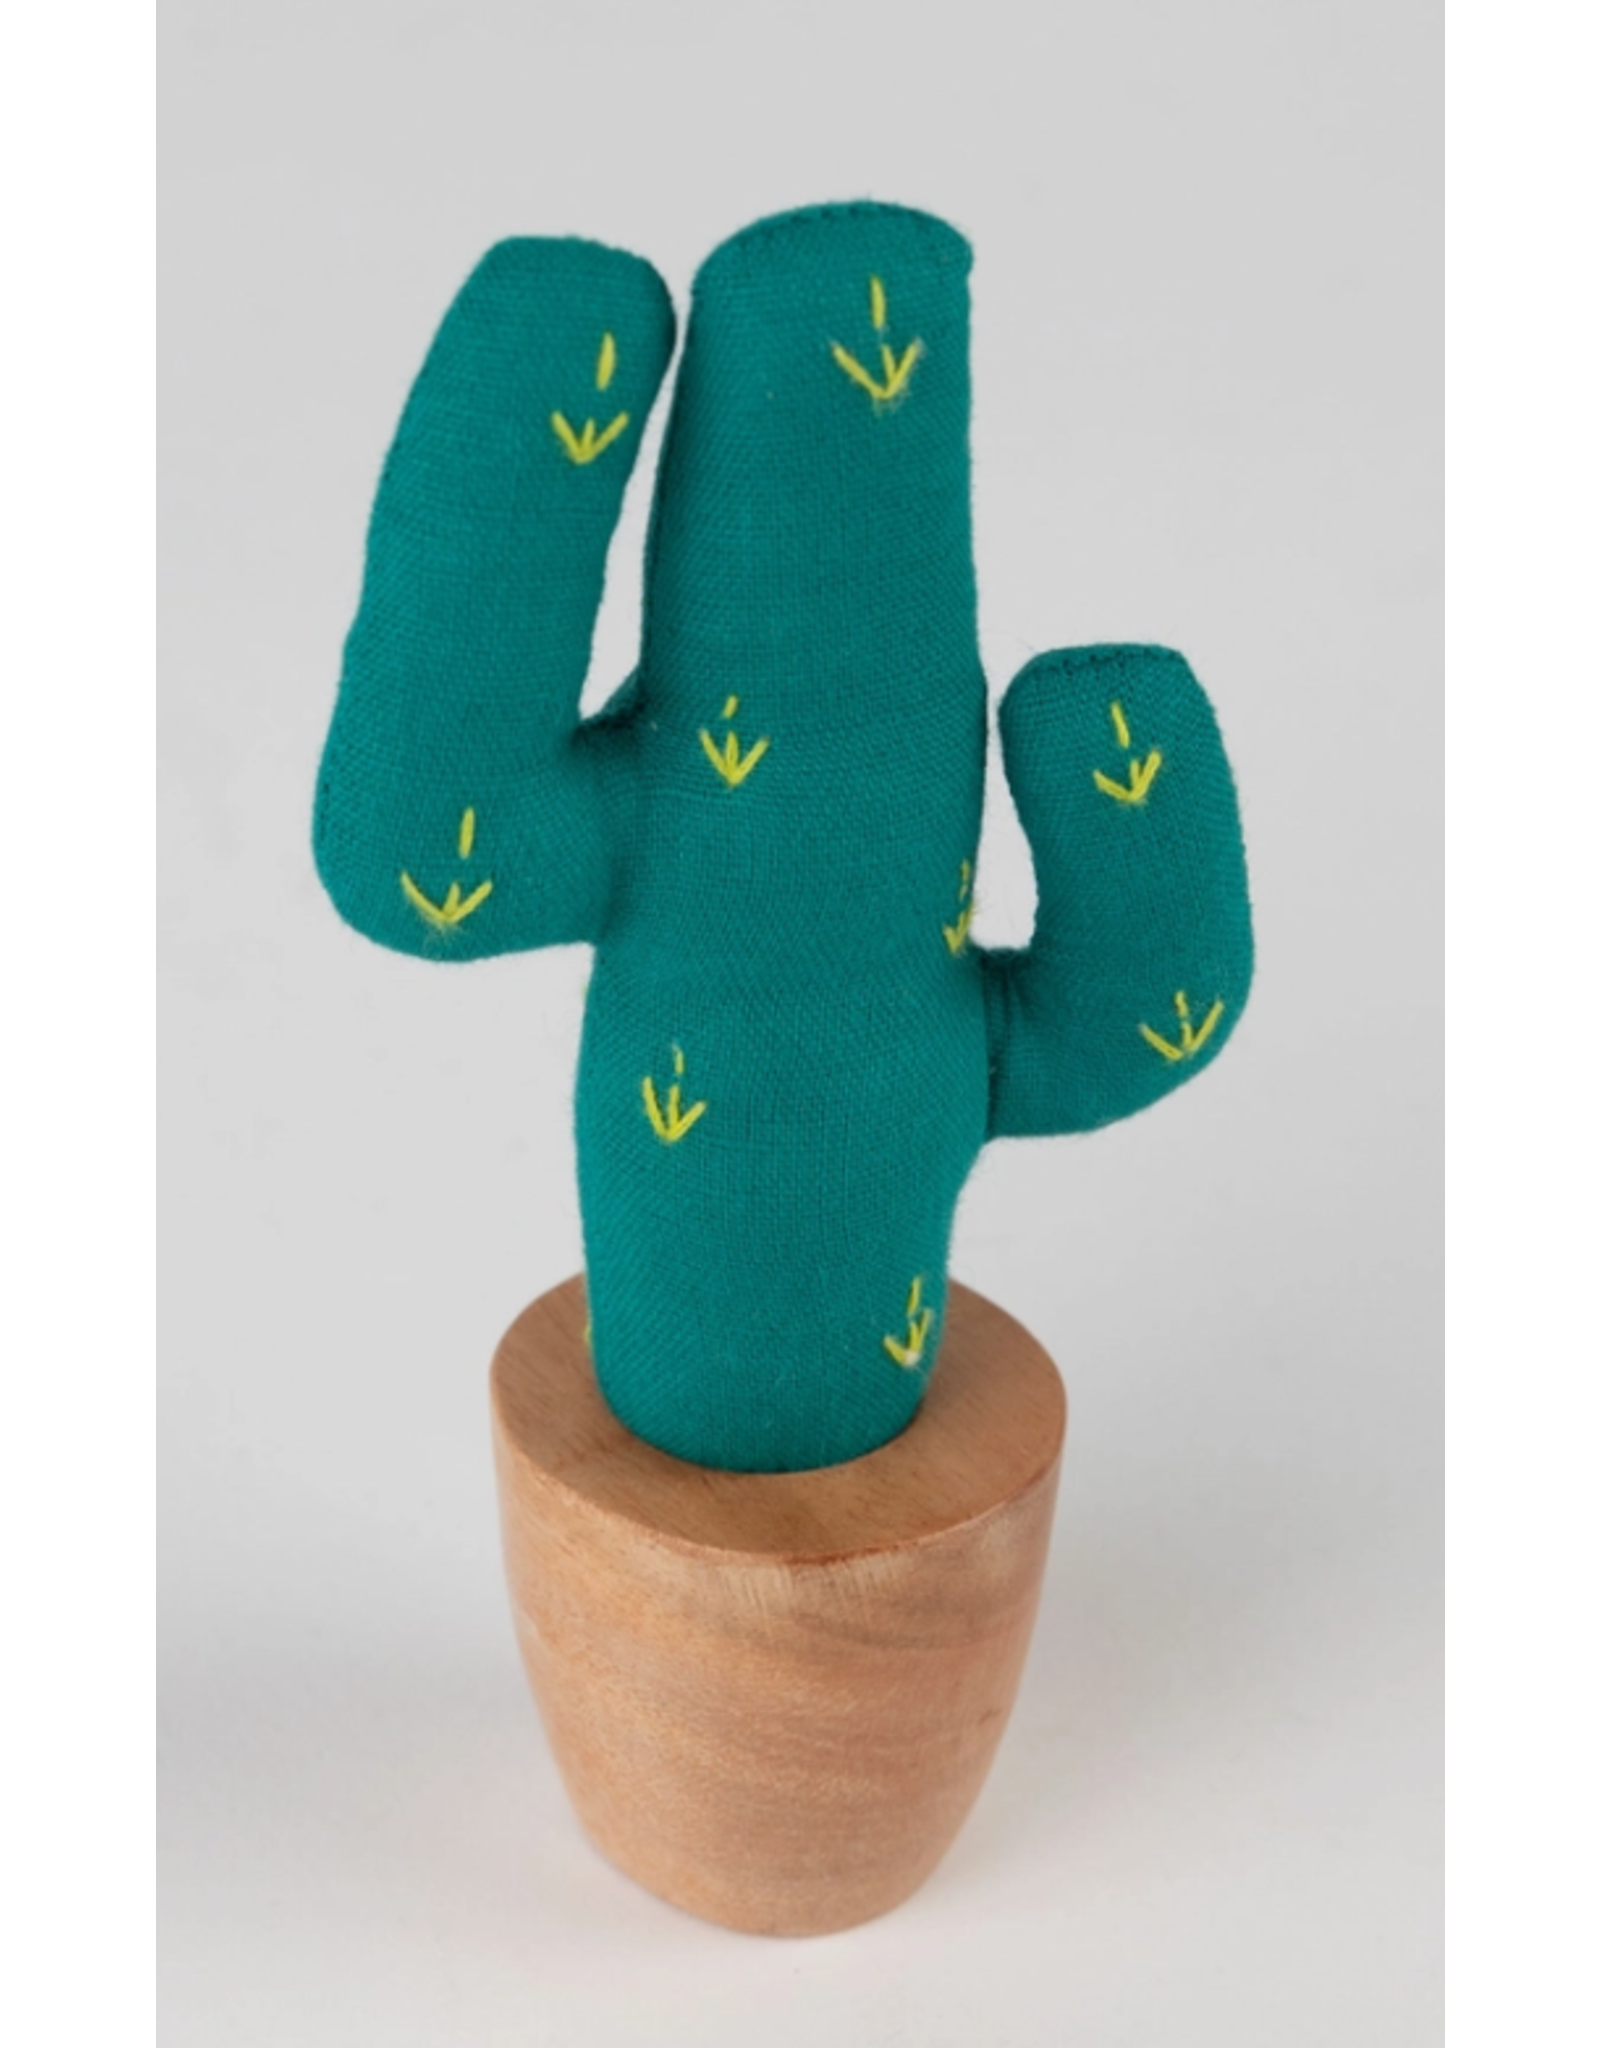 India Cotton Saguaro Cactus, India